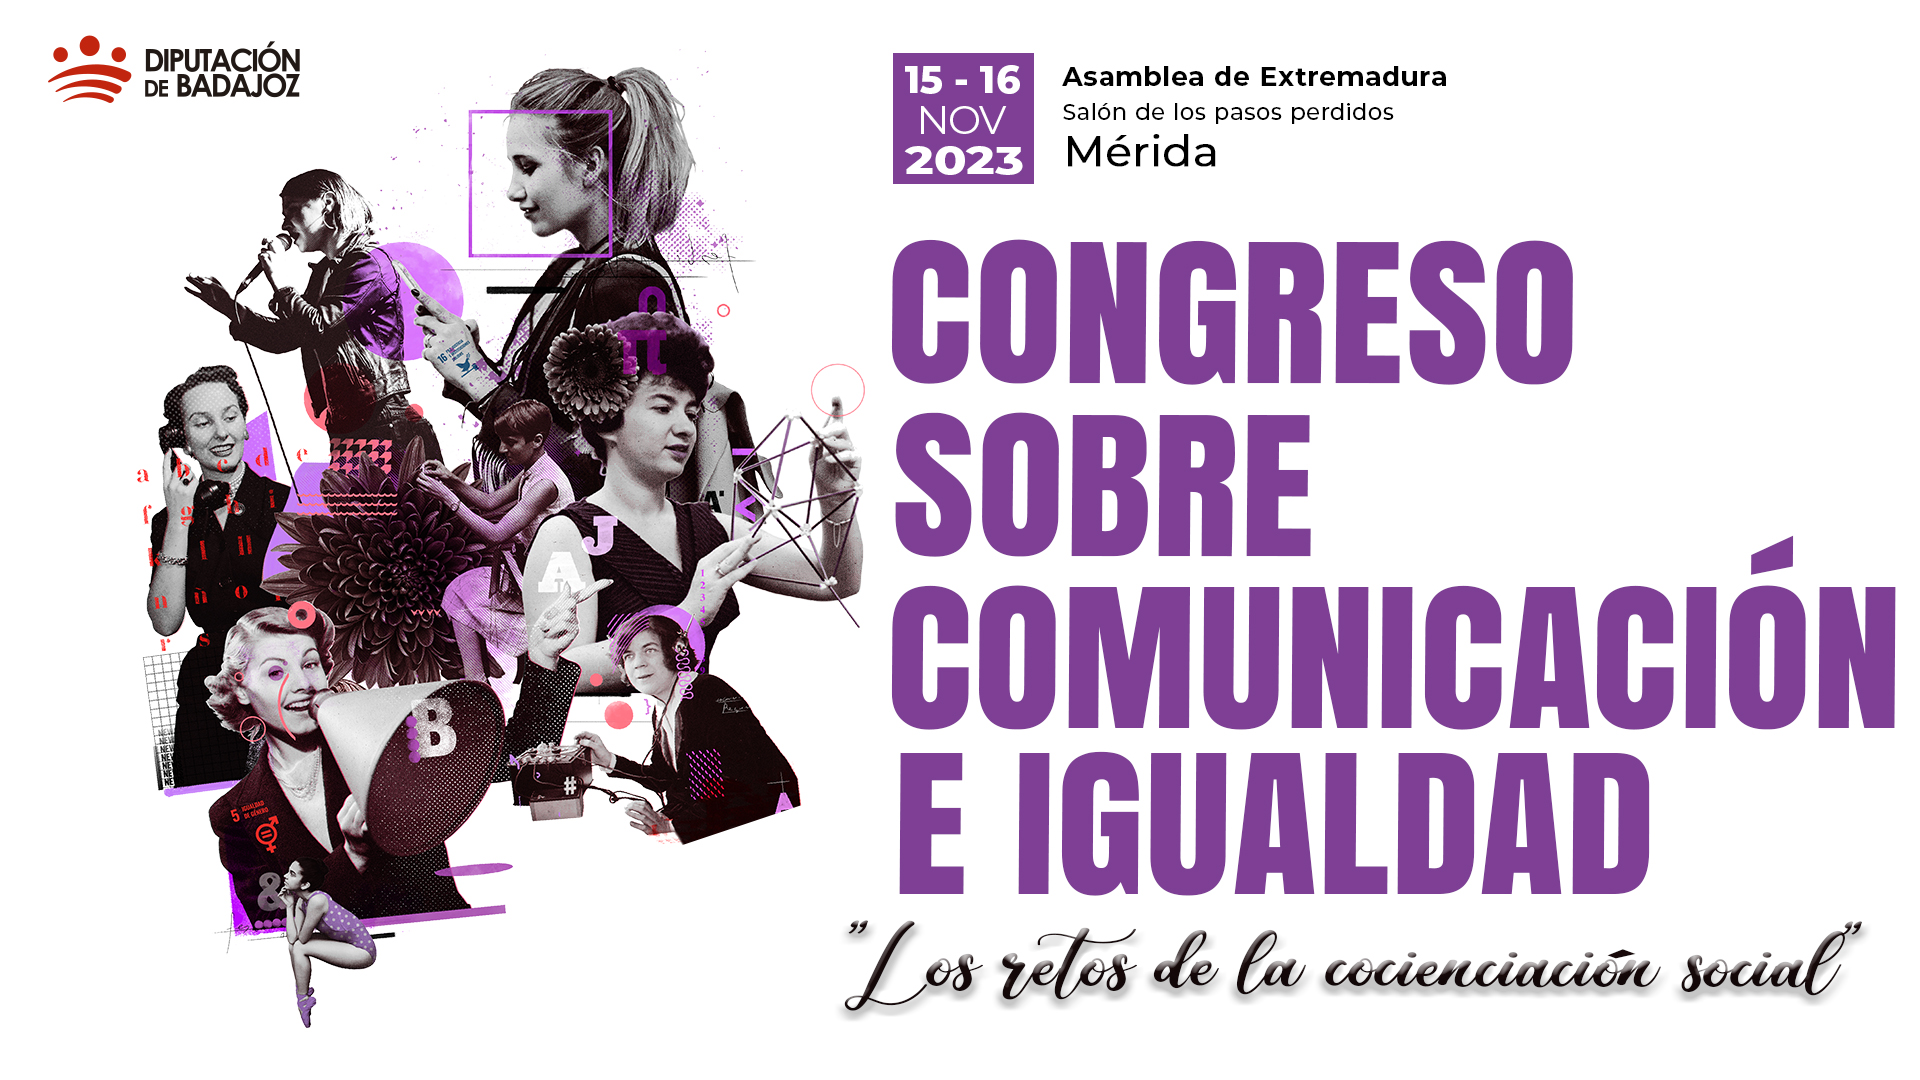 Congreso sobre Comunicación e Igualdad "los retos de la concienciación social"